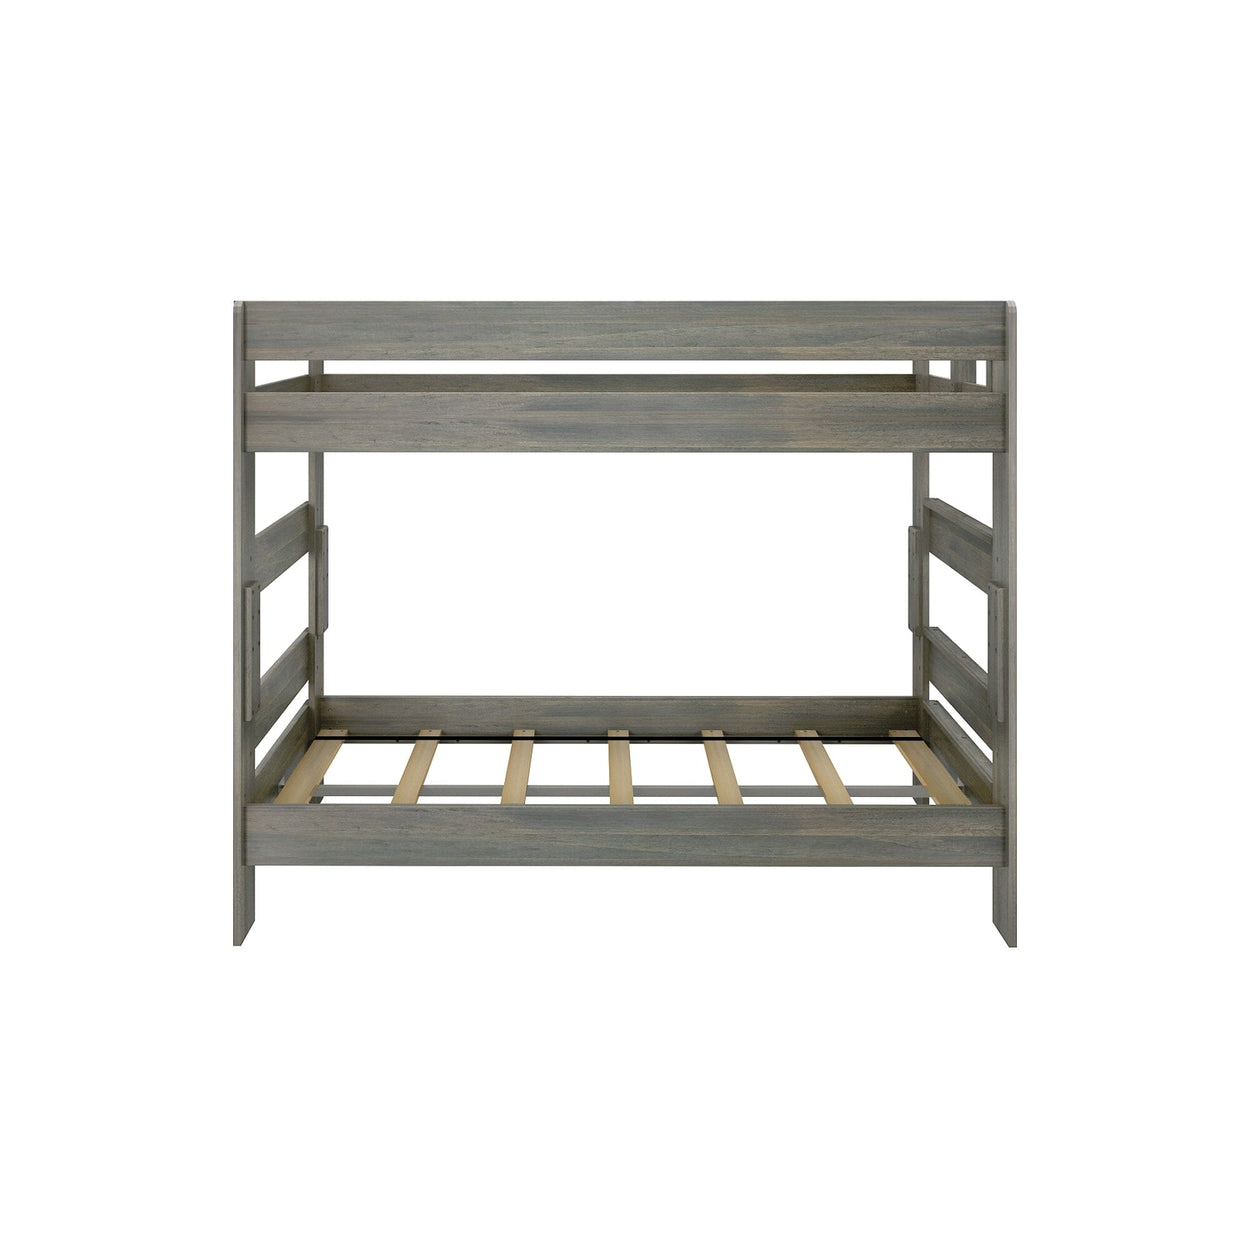 190201-185 : Bunk Beds K/D Twin/Twin Bunk, 7 slats w/ metal support bar, Driftwood